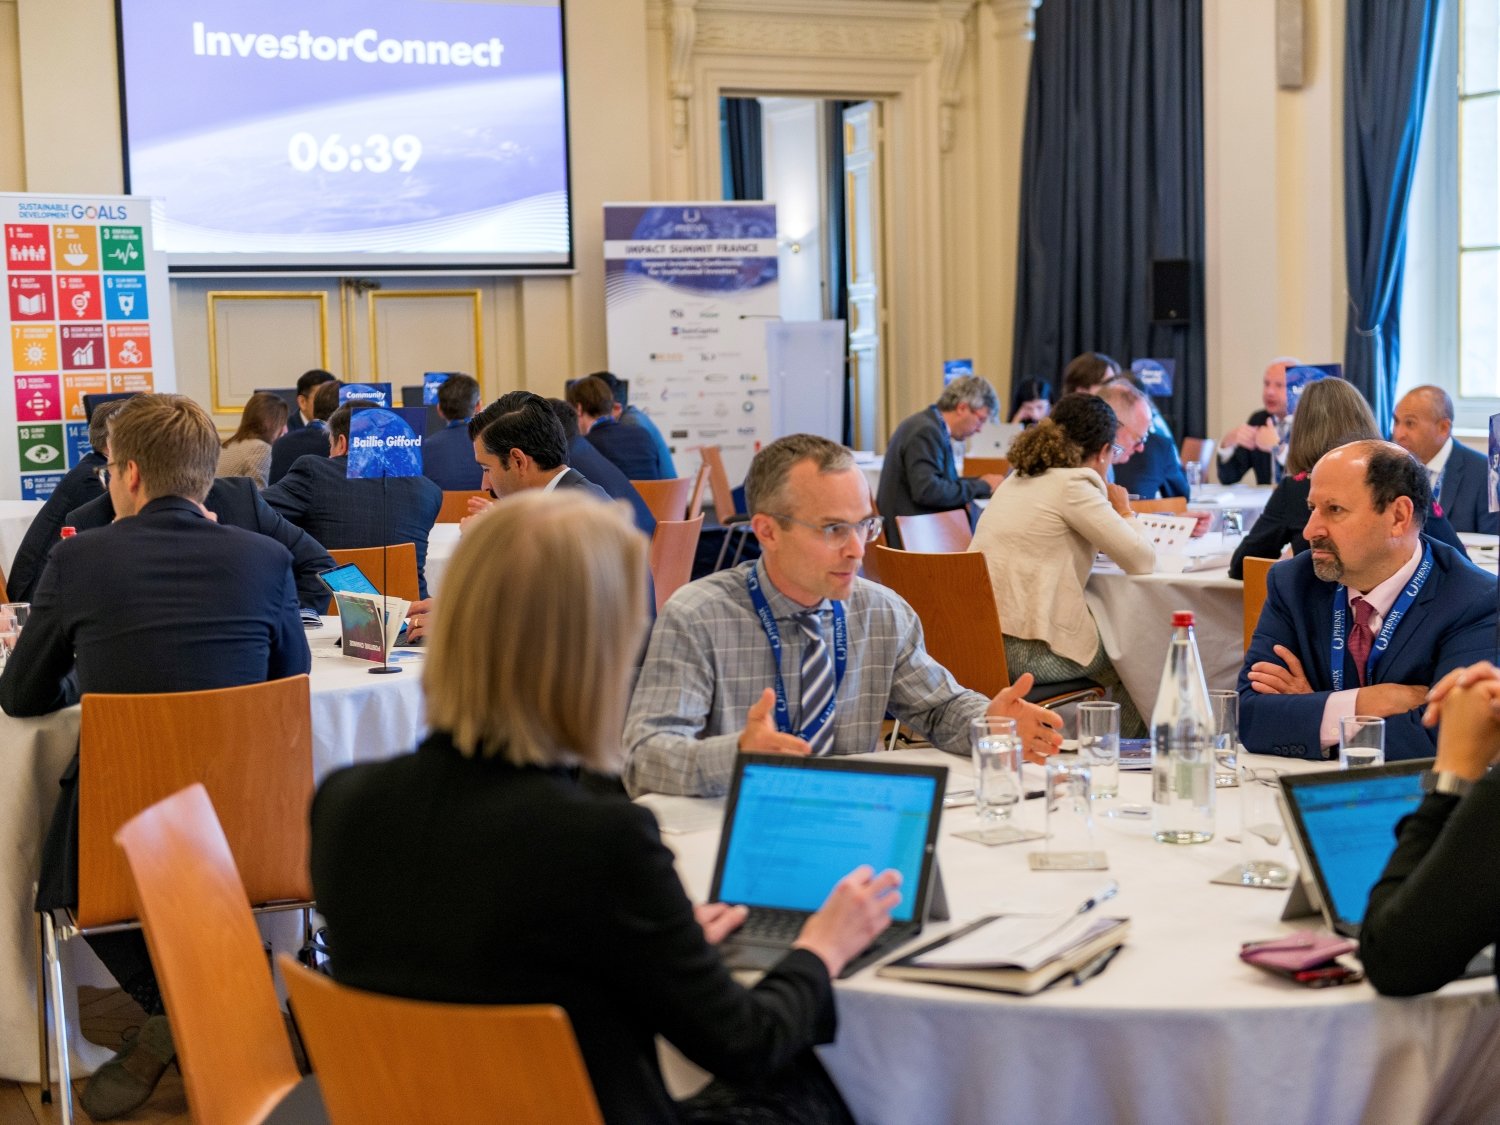 Impact Seminar Series - impact investing event for institutional investors